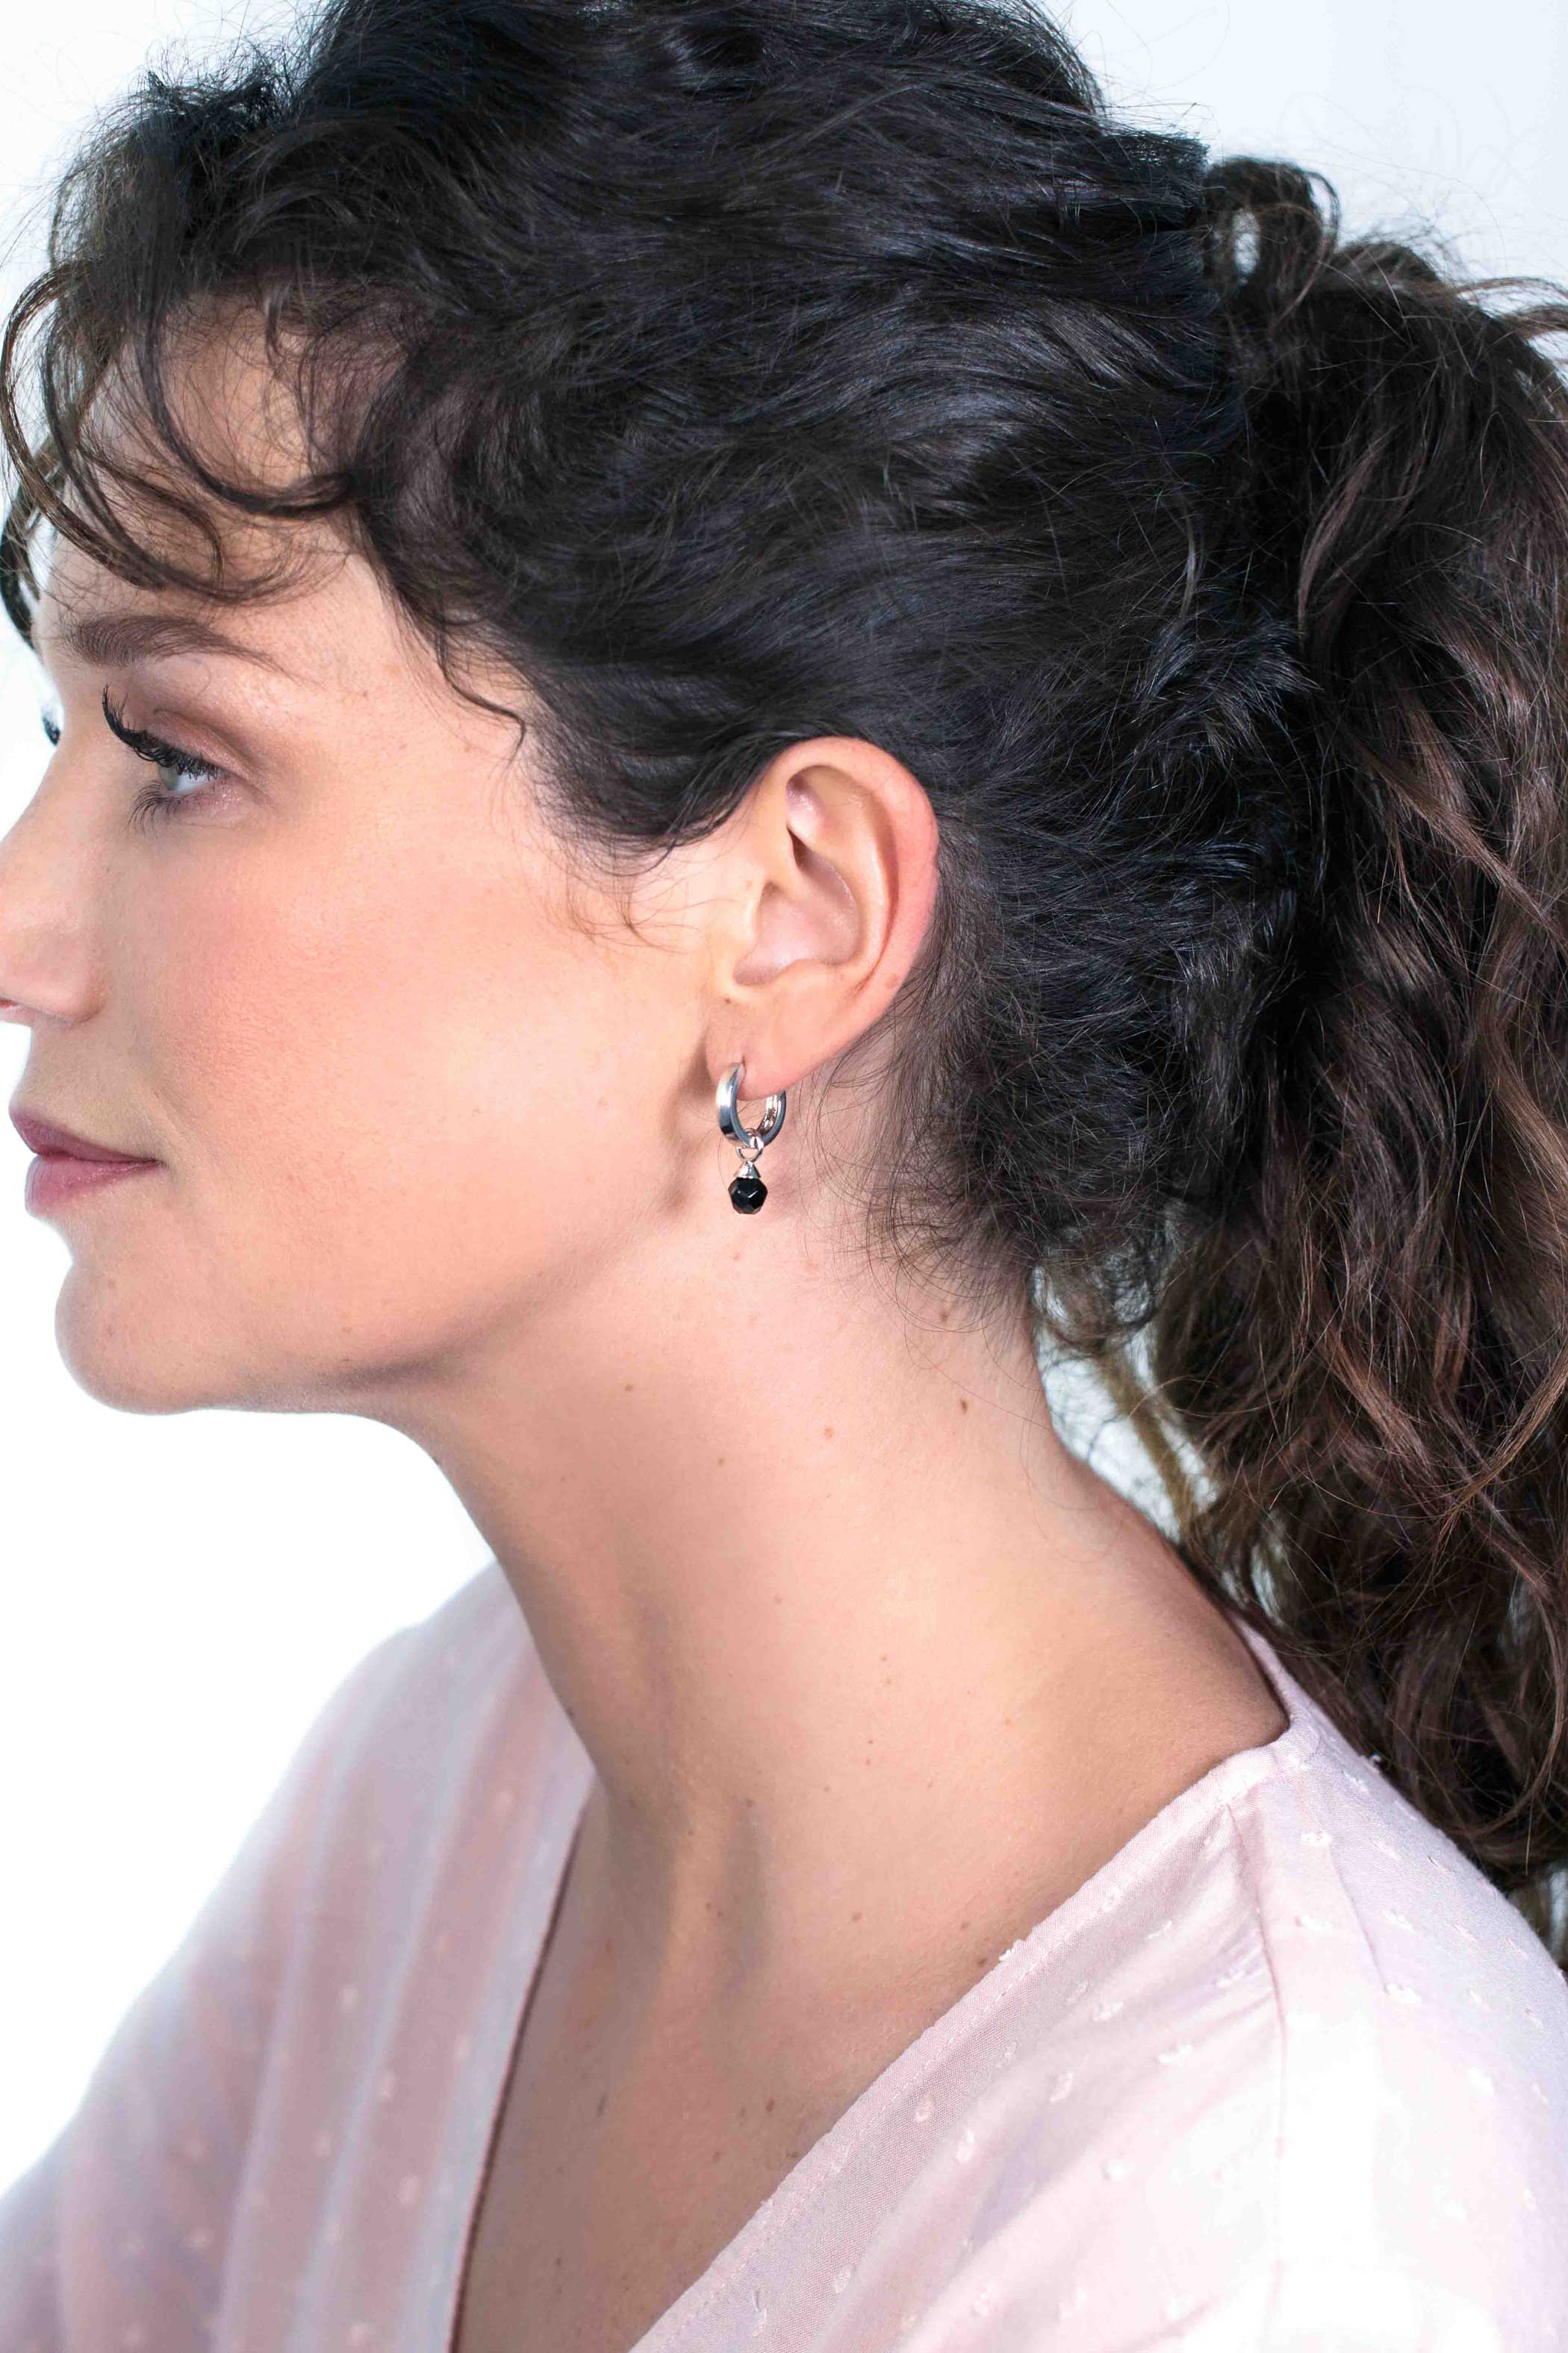 ZINZI Sterling Silver Earrings Pendants Black ZICH1749Z (excl. hoop earrings)